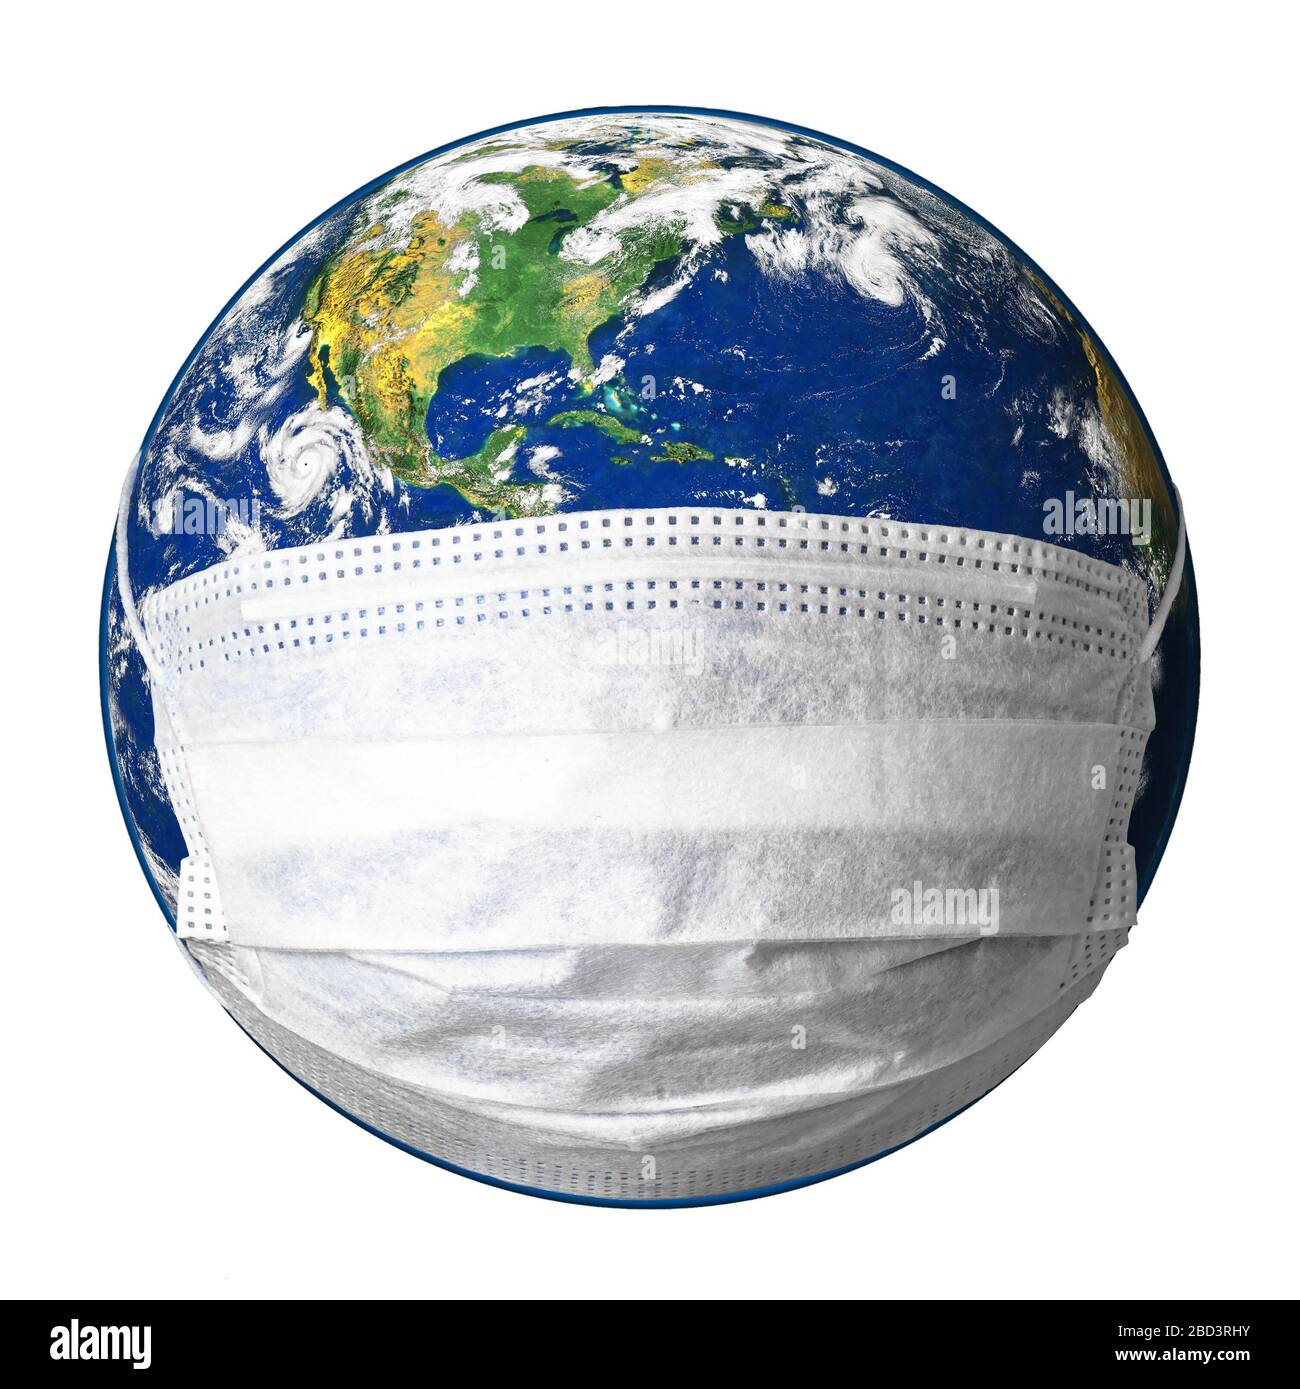 Terra in maschera medica isolata su sfondo bianco, concetto di coronavirus nel mondo, COVID-19 pandemia e sicurezza. Globo con protezione da corona viru Foto Stock